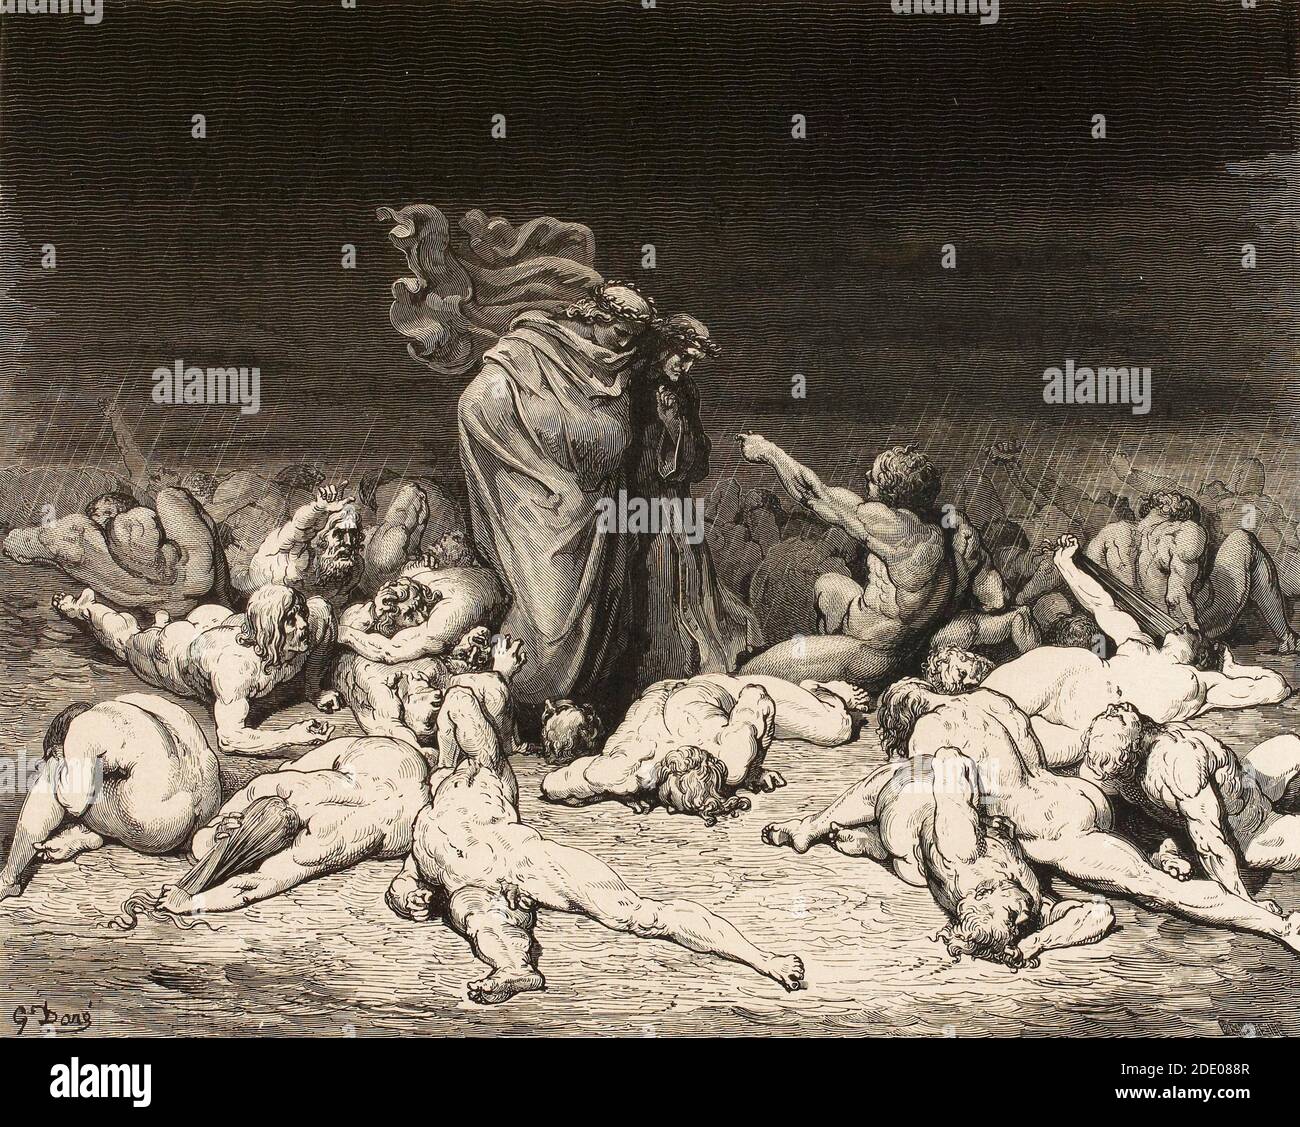 Dante Divina Commedia - Hölle - Dante und Virgil treffen sich Ciacco im dritten Kreis der Glutton - Canto VI - Illustration von Gustave Dorè Stockfoto